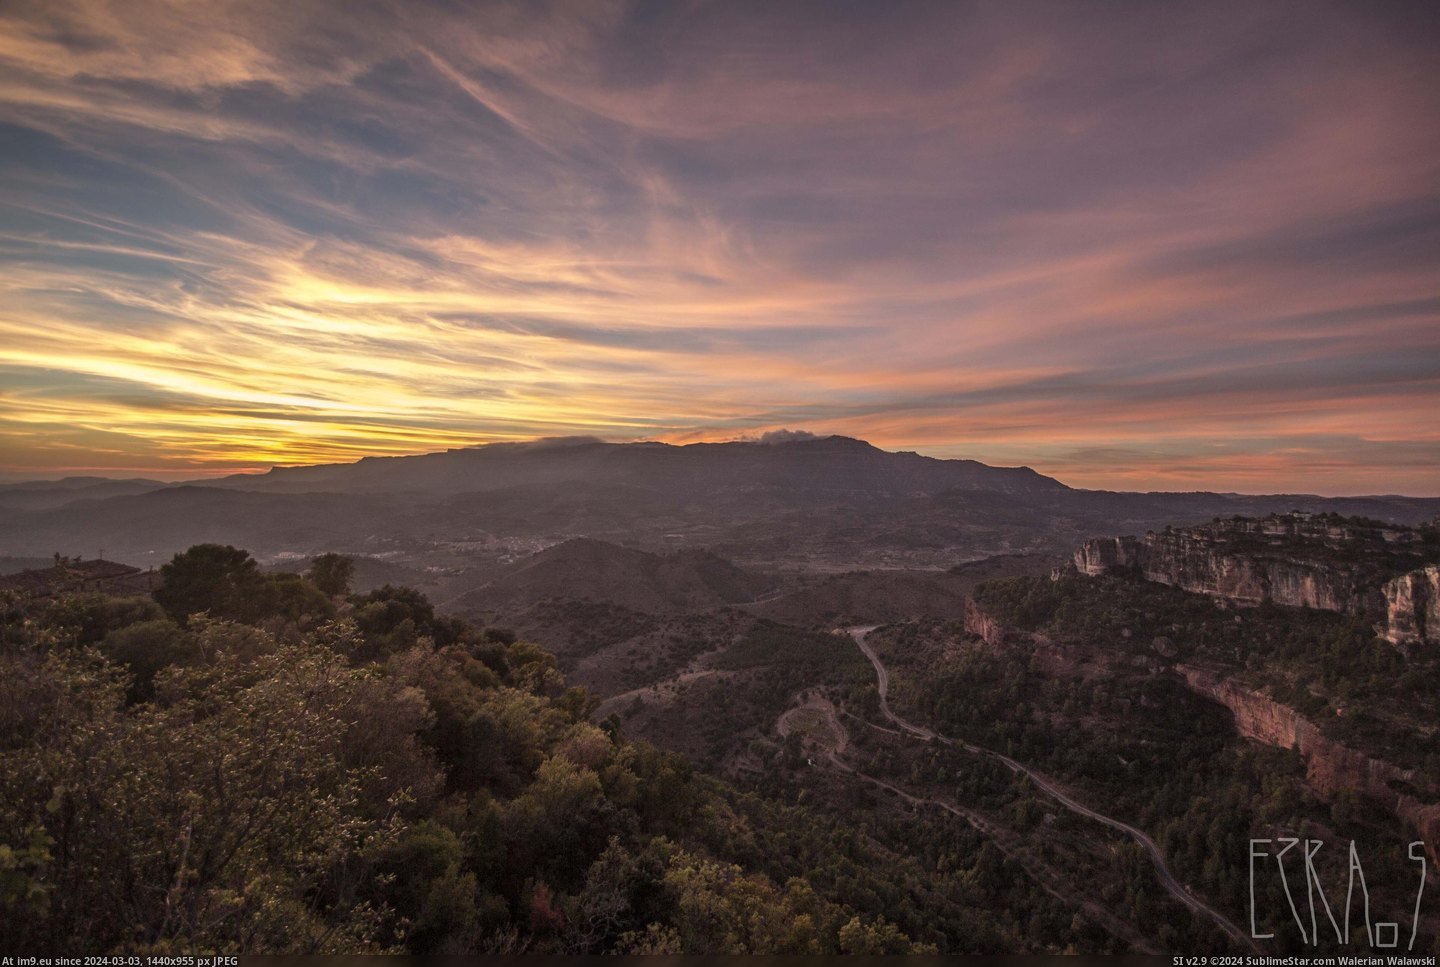 #Mountain #Ranges #Tarragona #Spain [Earthporn] Mountain ranges near Tarragona, Spain - [5184 x 3456] Pic. (Изображение из альбом My r/EARTHPORN favs))